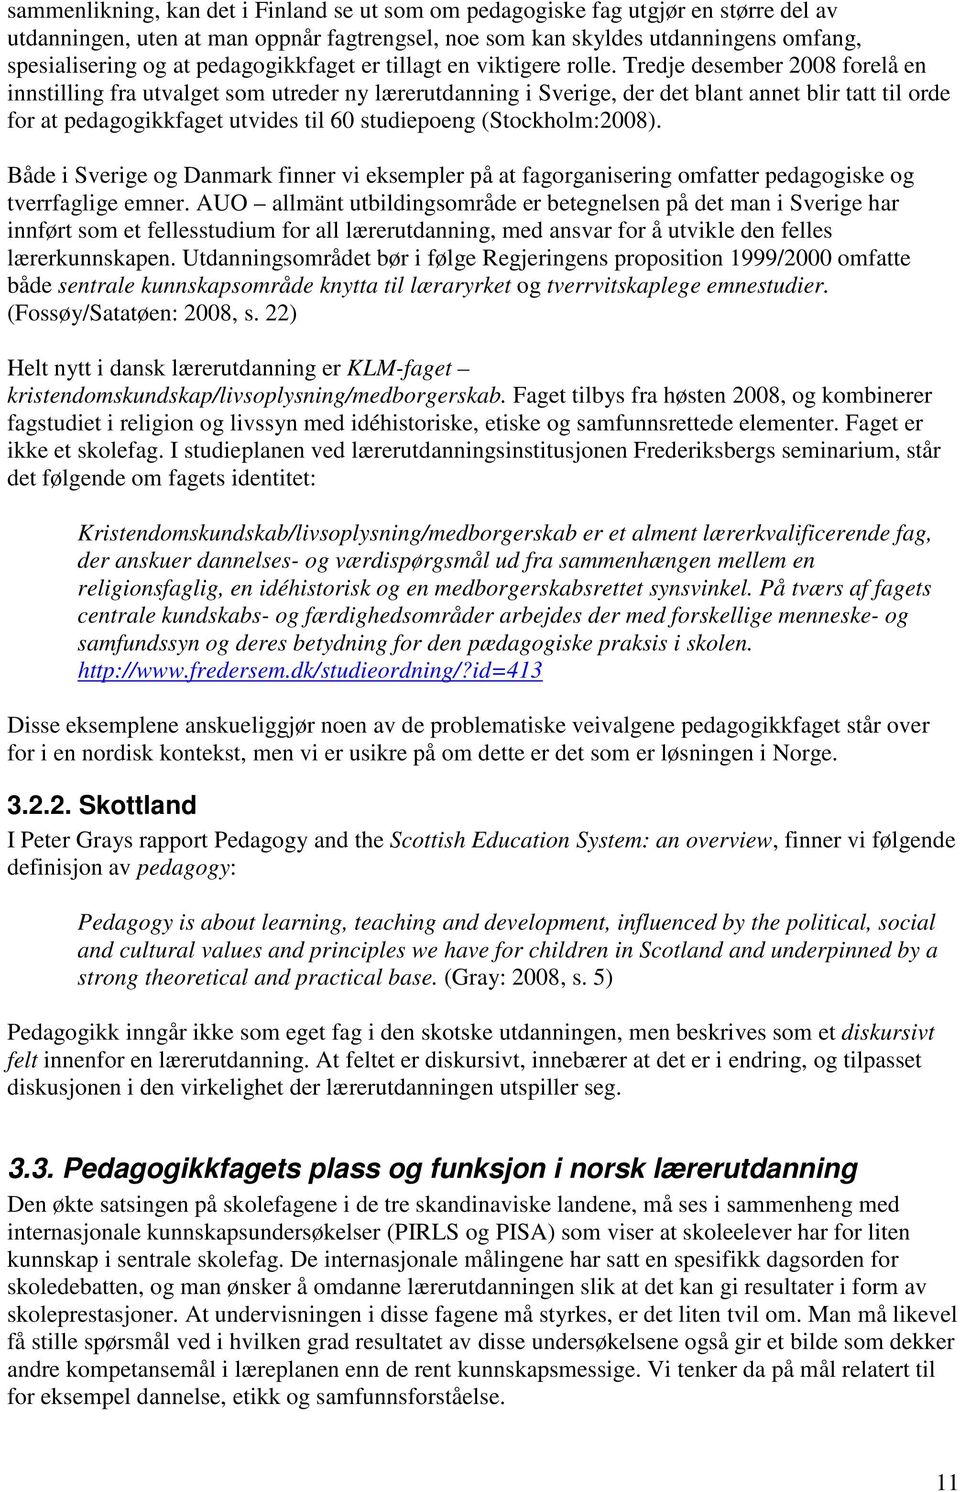 Tredje desember 2008 forelå en innstilling fra utvalget som utreder ny lærerutdanning i Sverige, der det blant annet blir tatt til orde for at pedagogikkfaget utvides til 60 studiepoeng